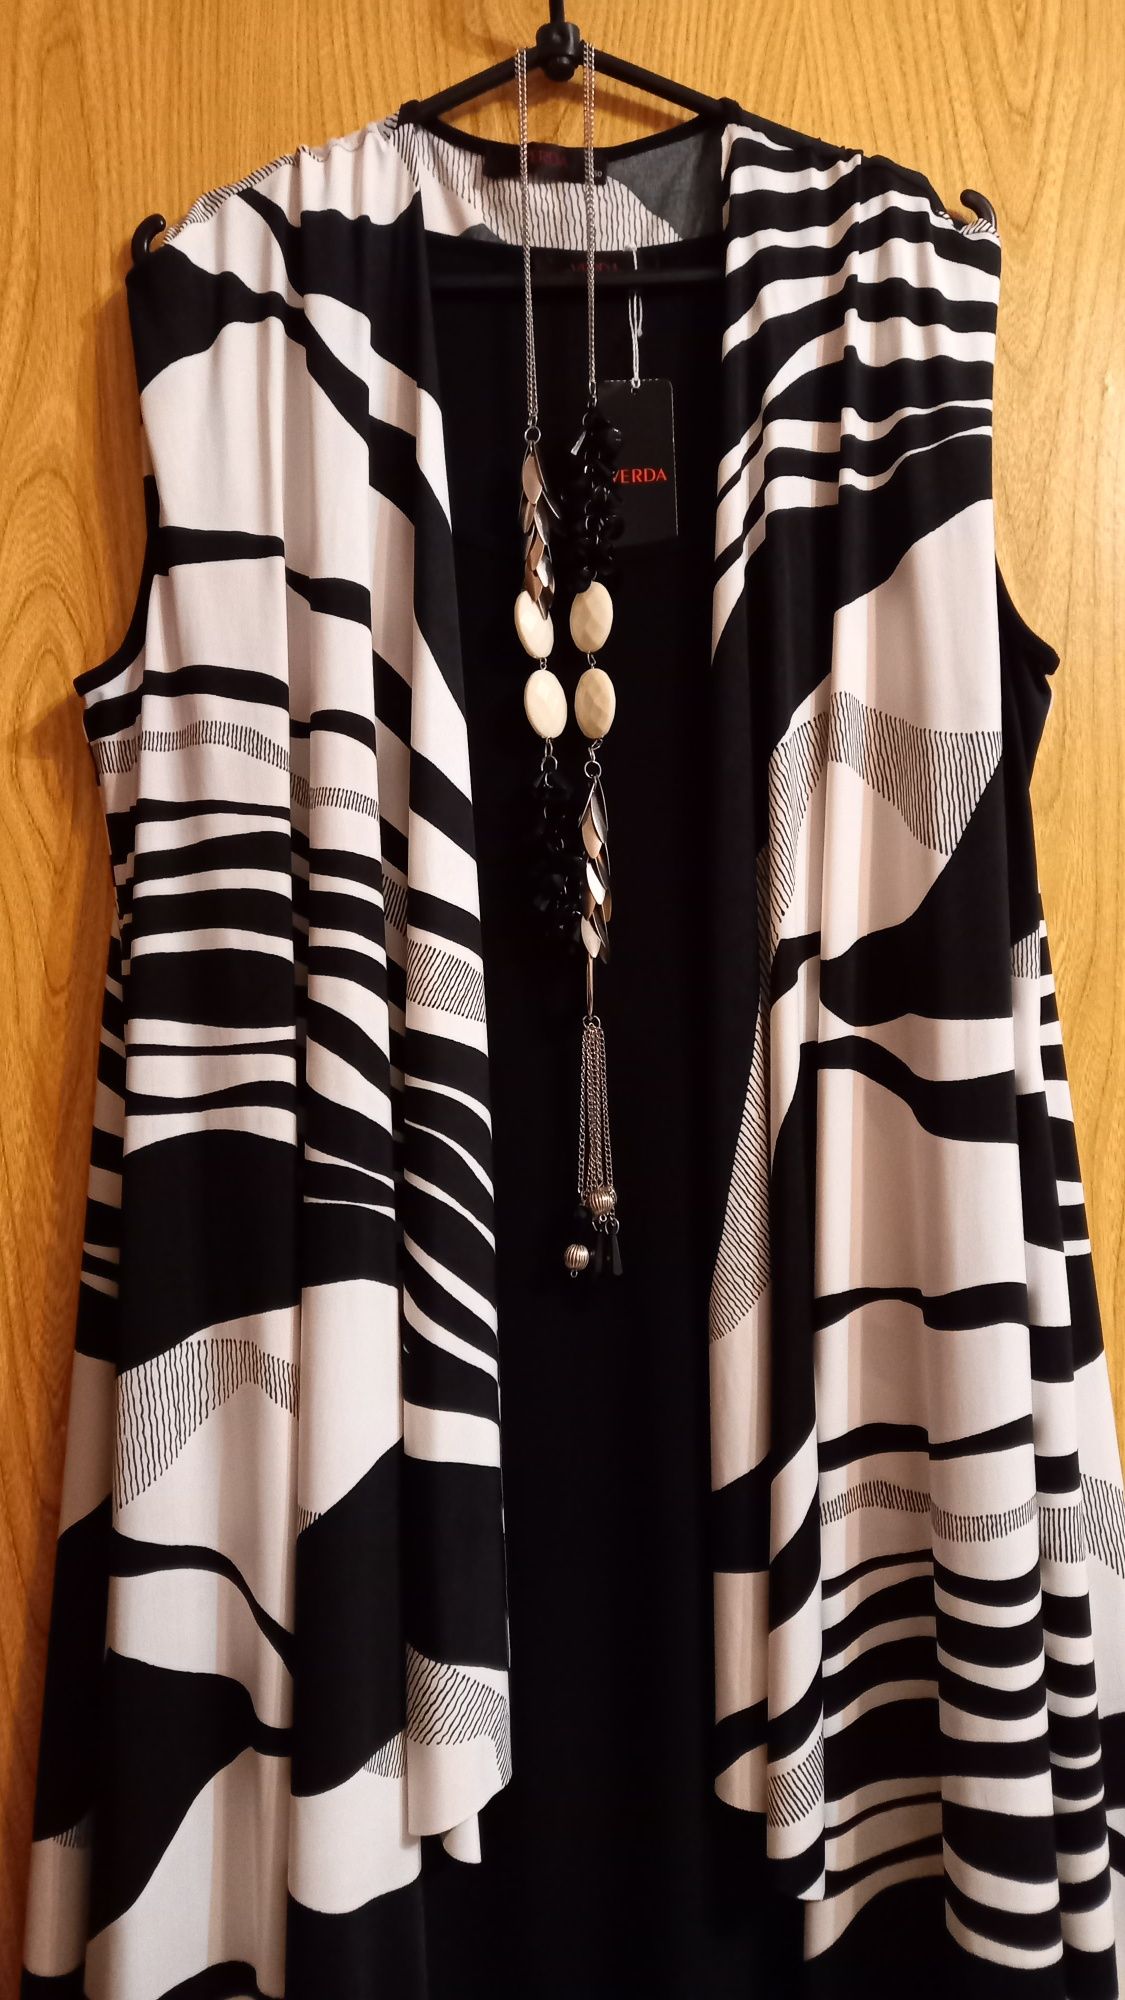 Женский шикарный костюм в чёрно-белом стиле - платье и накидка